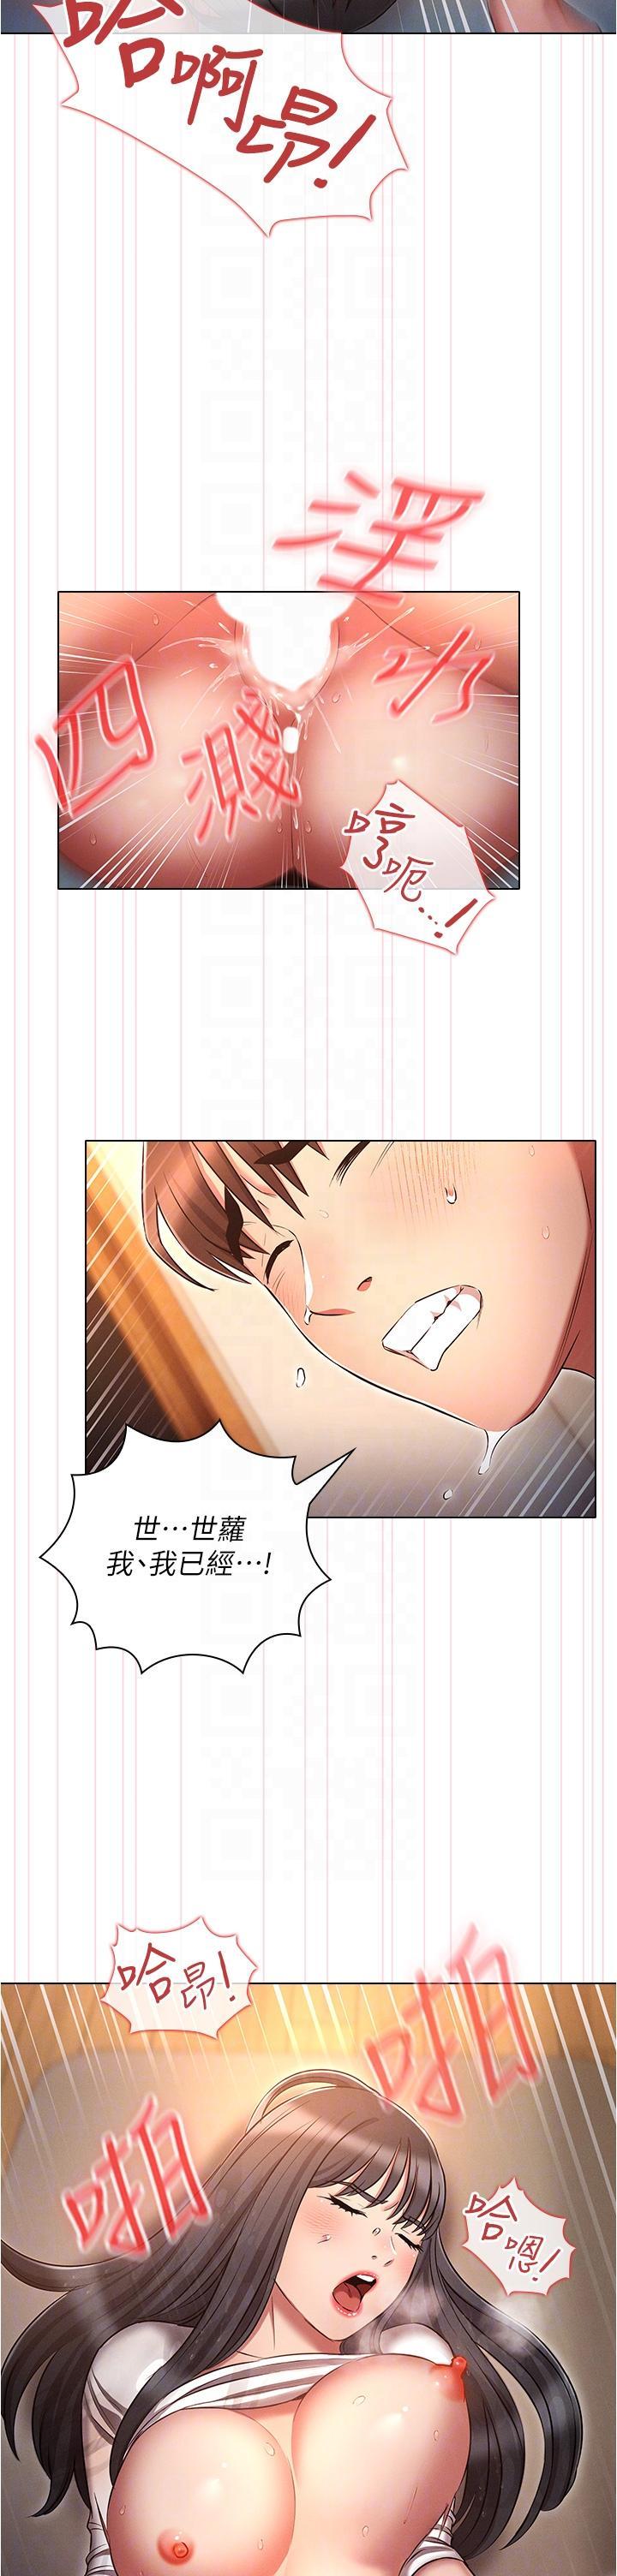 韩国污漫画 魯蛇的多重宇宙 第49话 高潮完用精液润润喉♥ 30